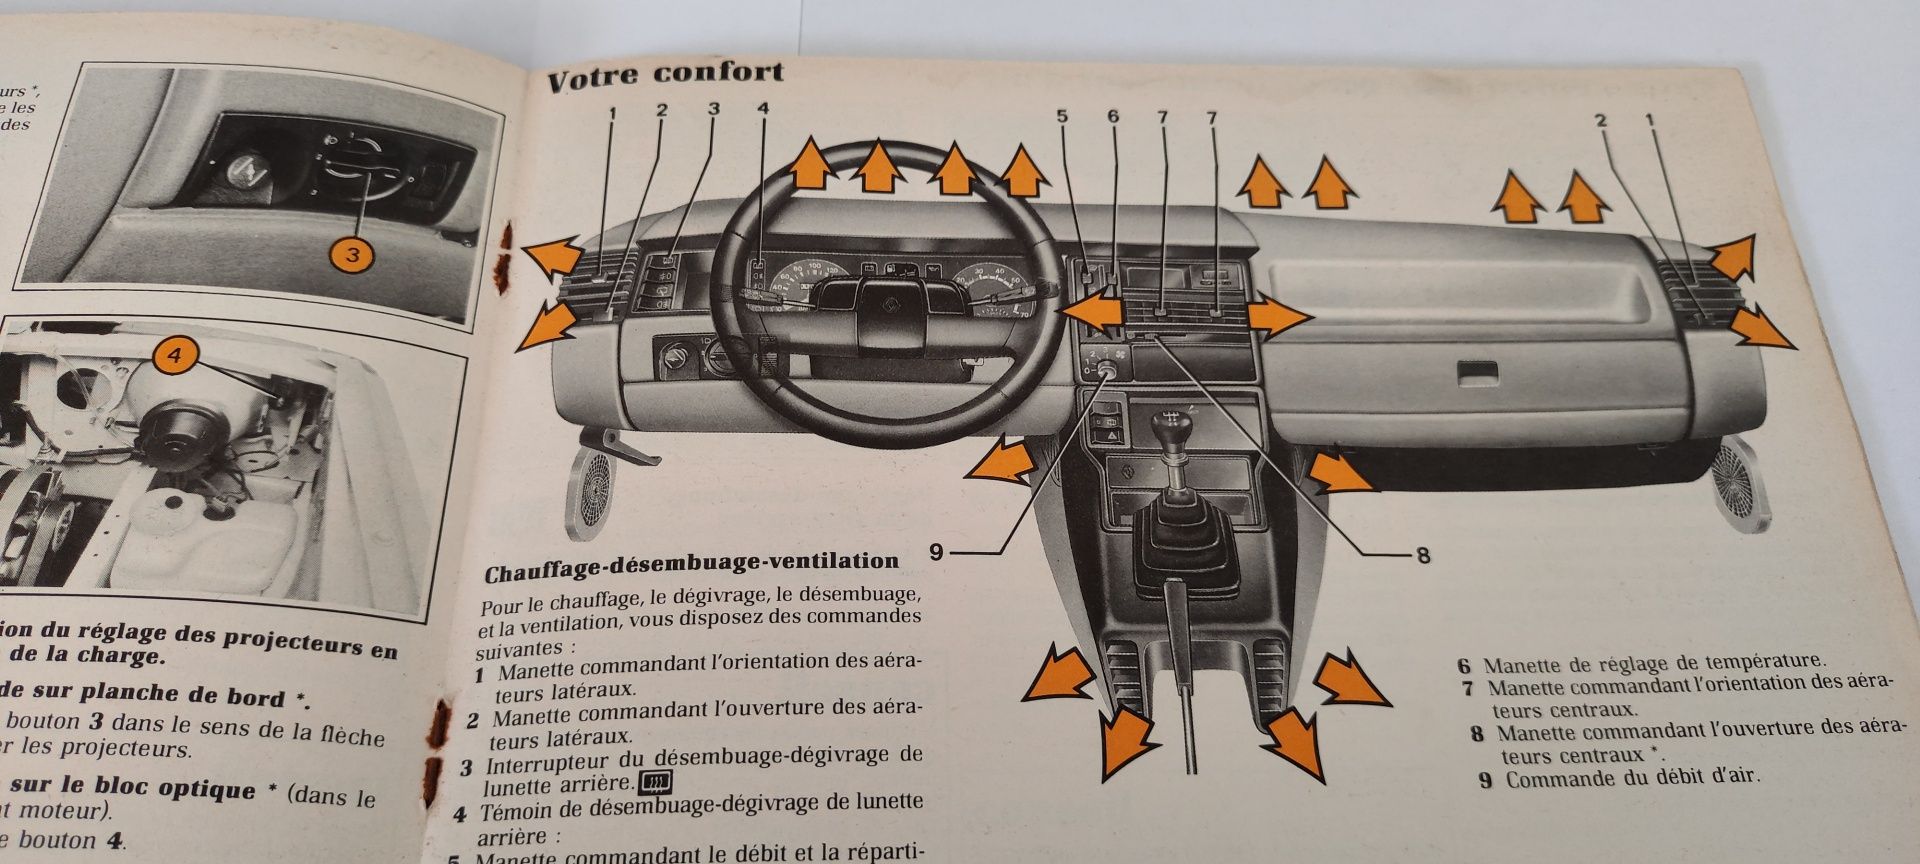 Manual do Condutor/Instruções do Renault 11 de 1987